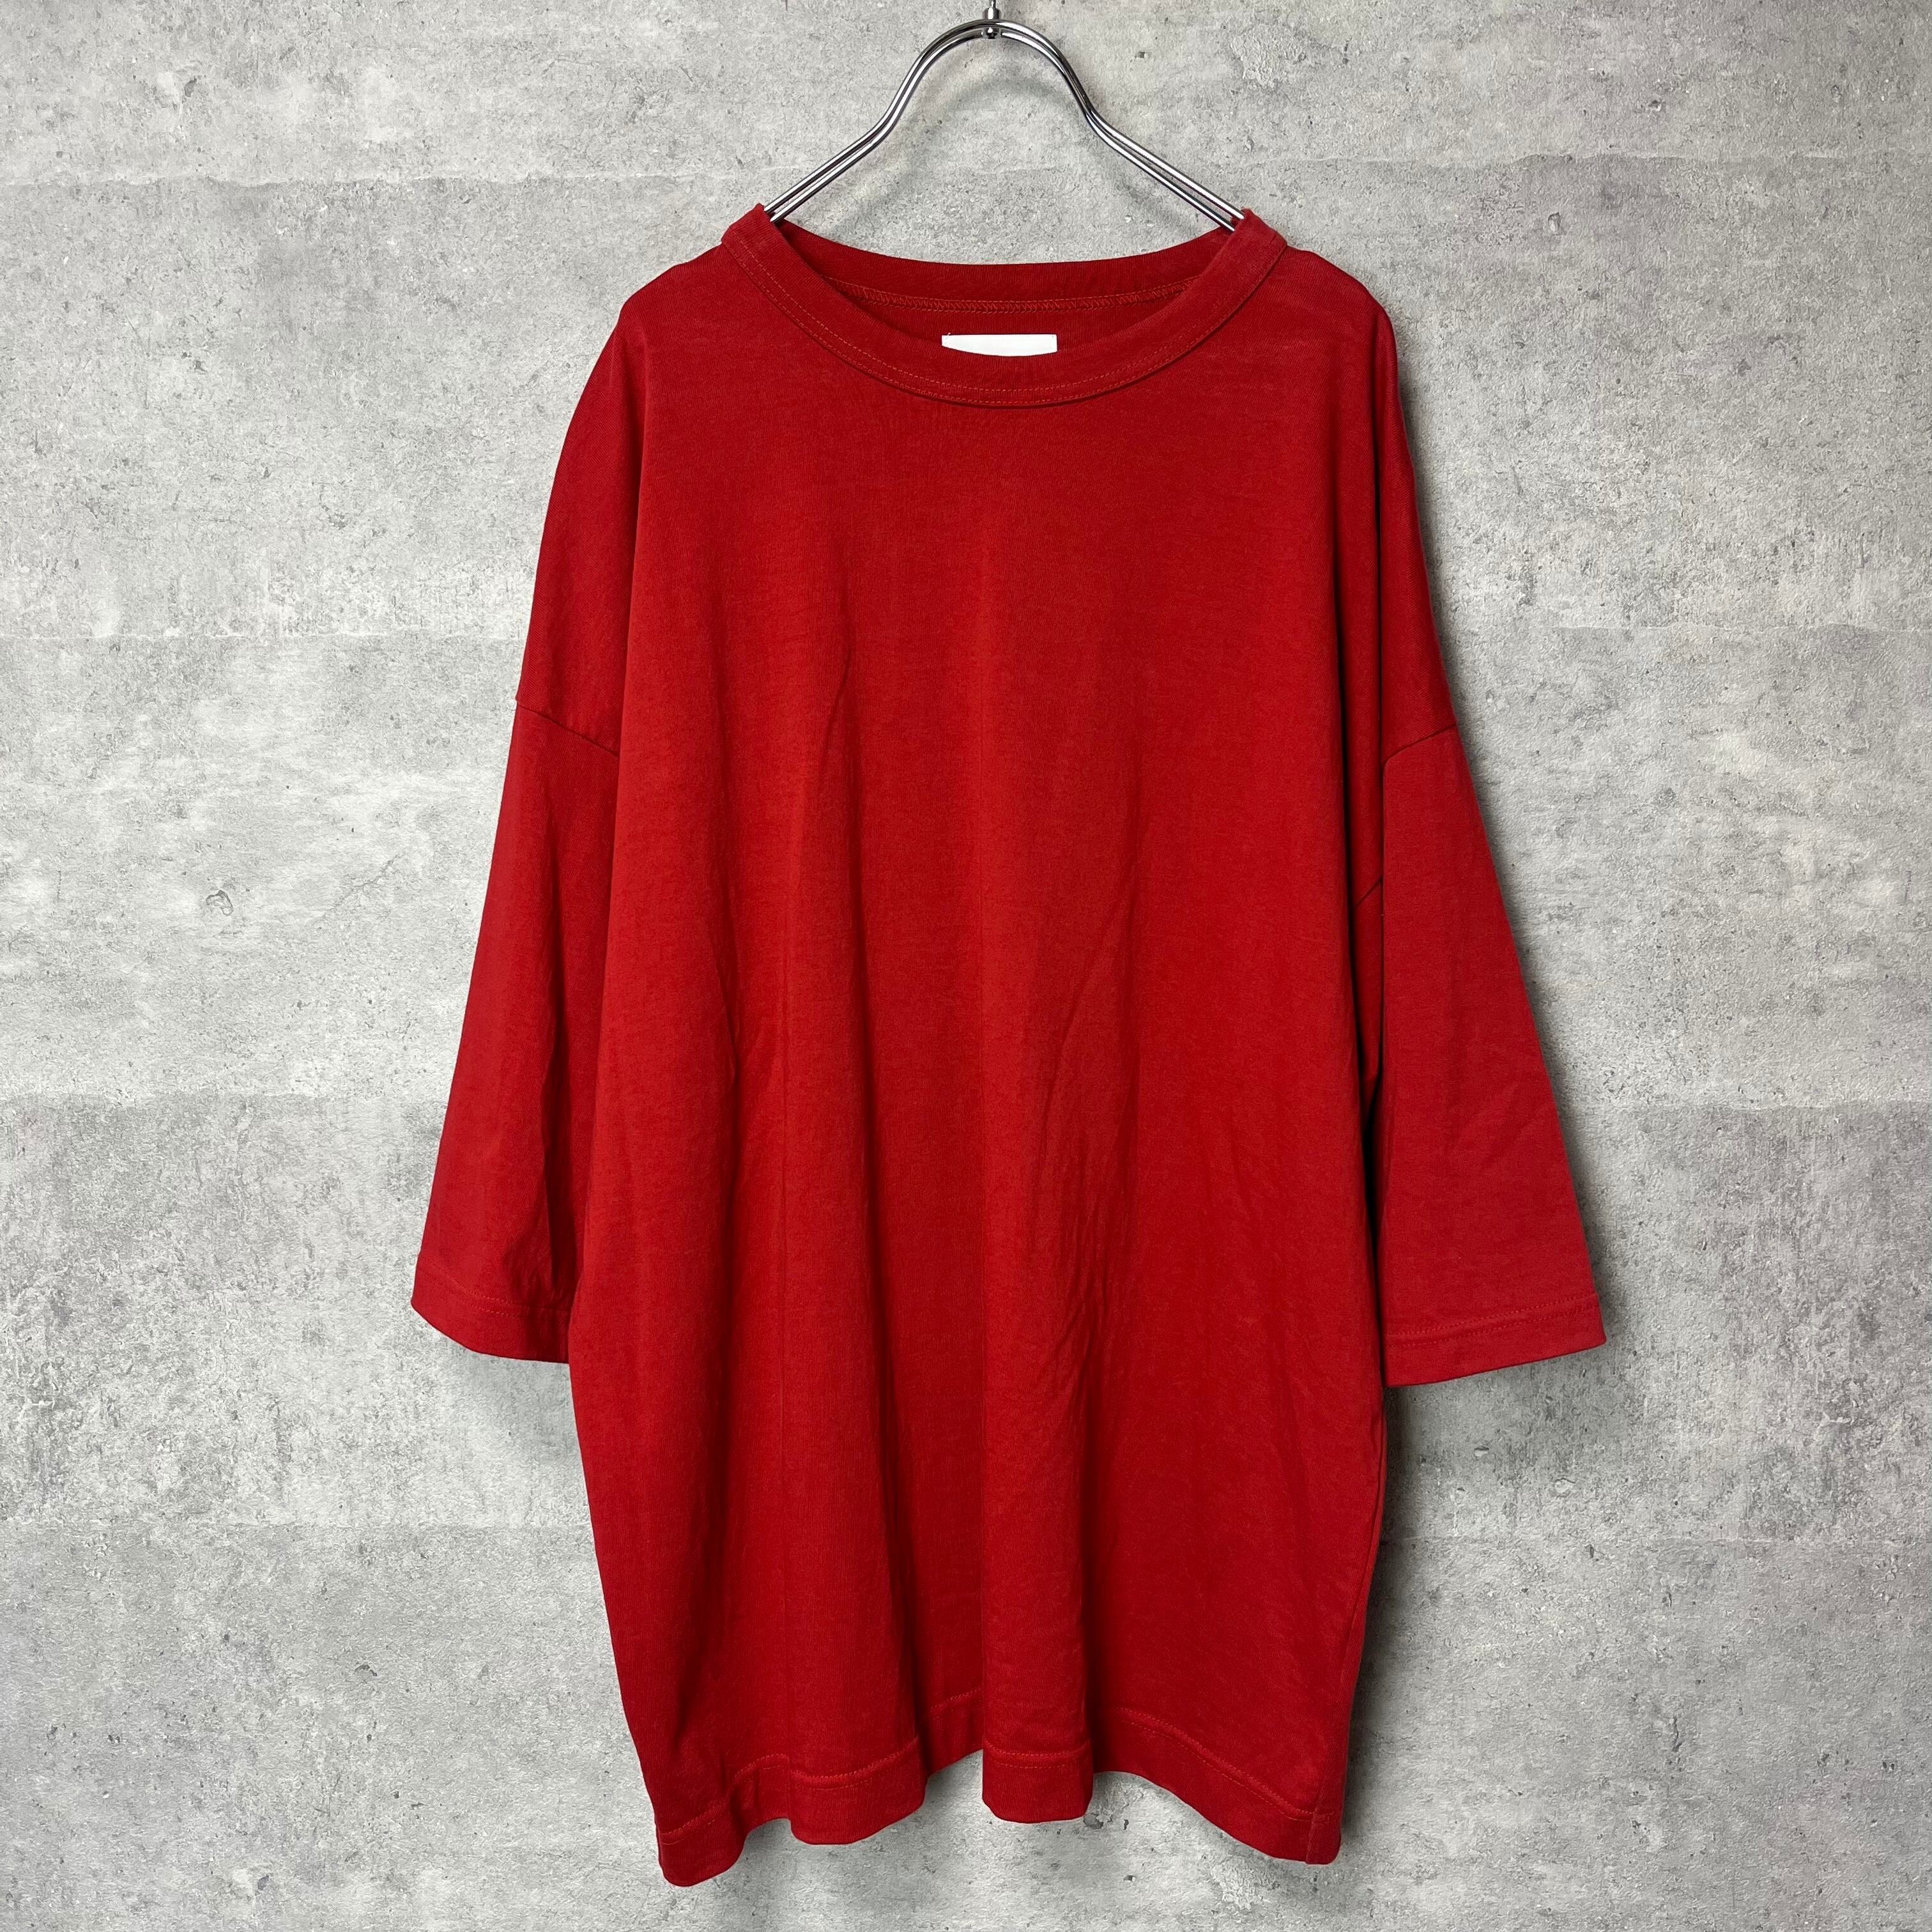 ルイス Lui's ビッグ Tシャツ 半袖 オーバーサイズTシャツ 赤 フリー